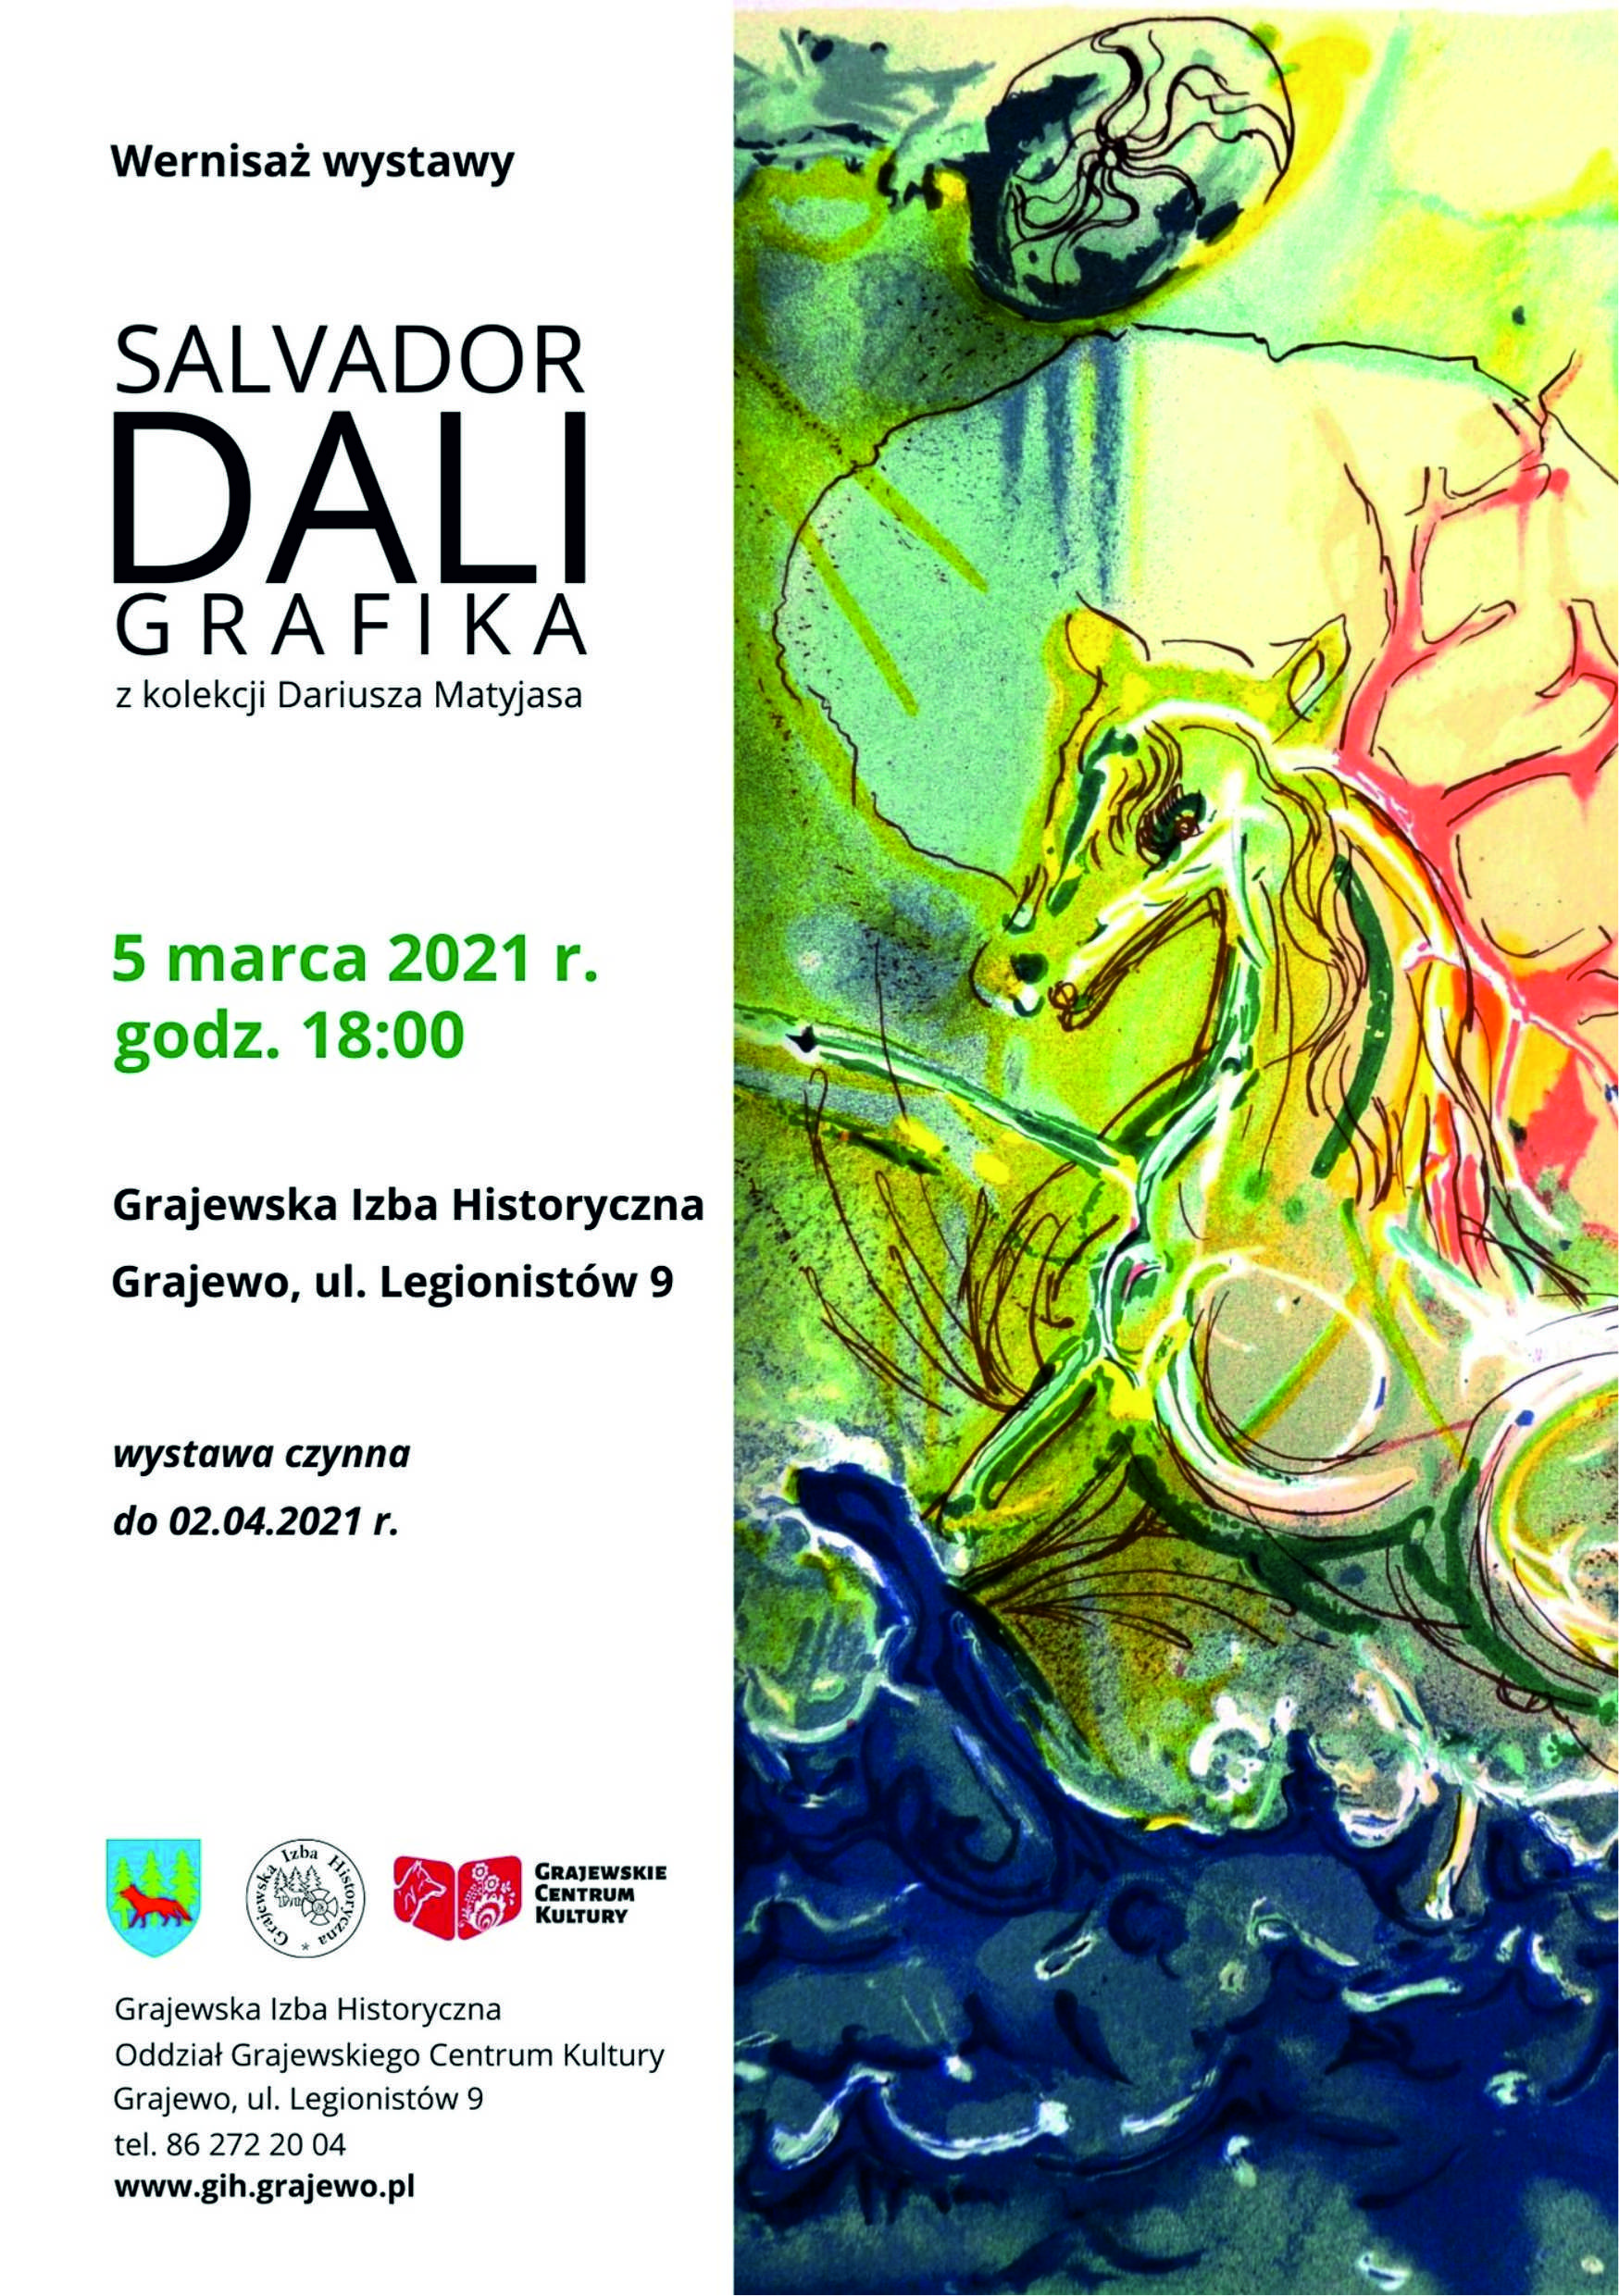 Plakat promujący wystawę  Prac Salvadora Dali